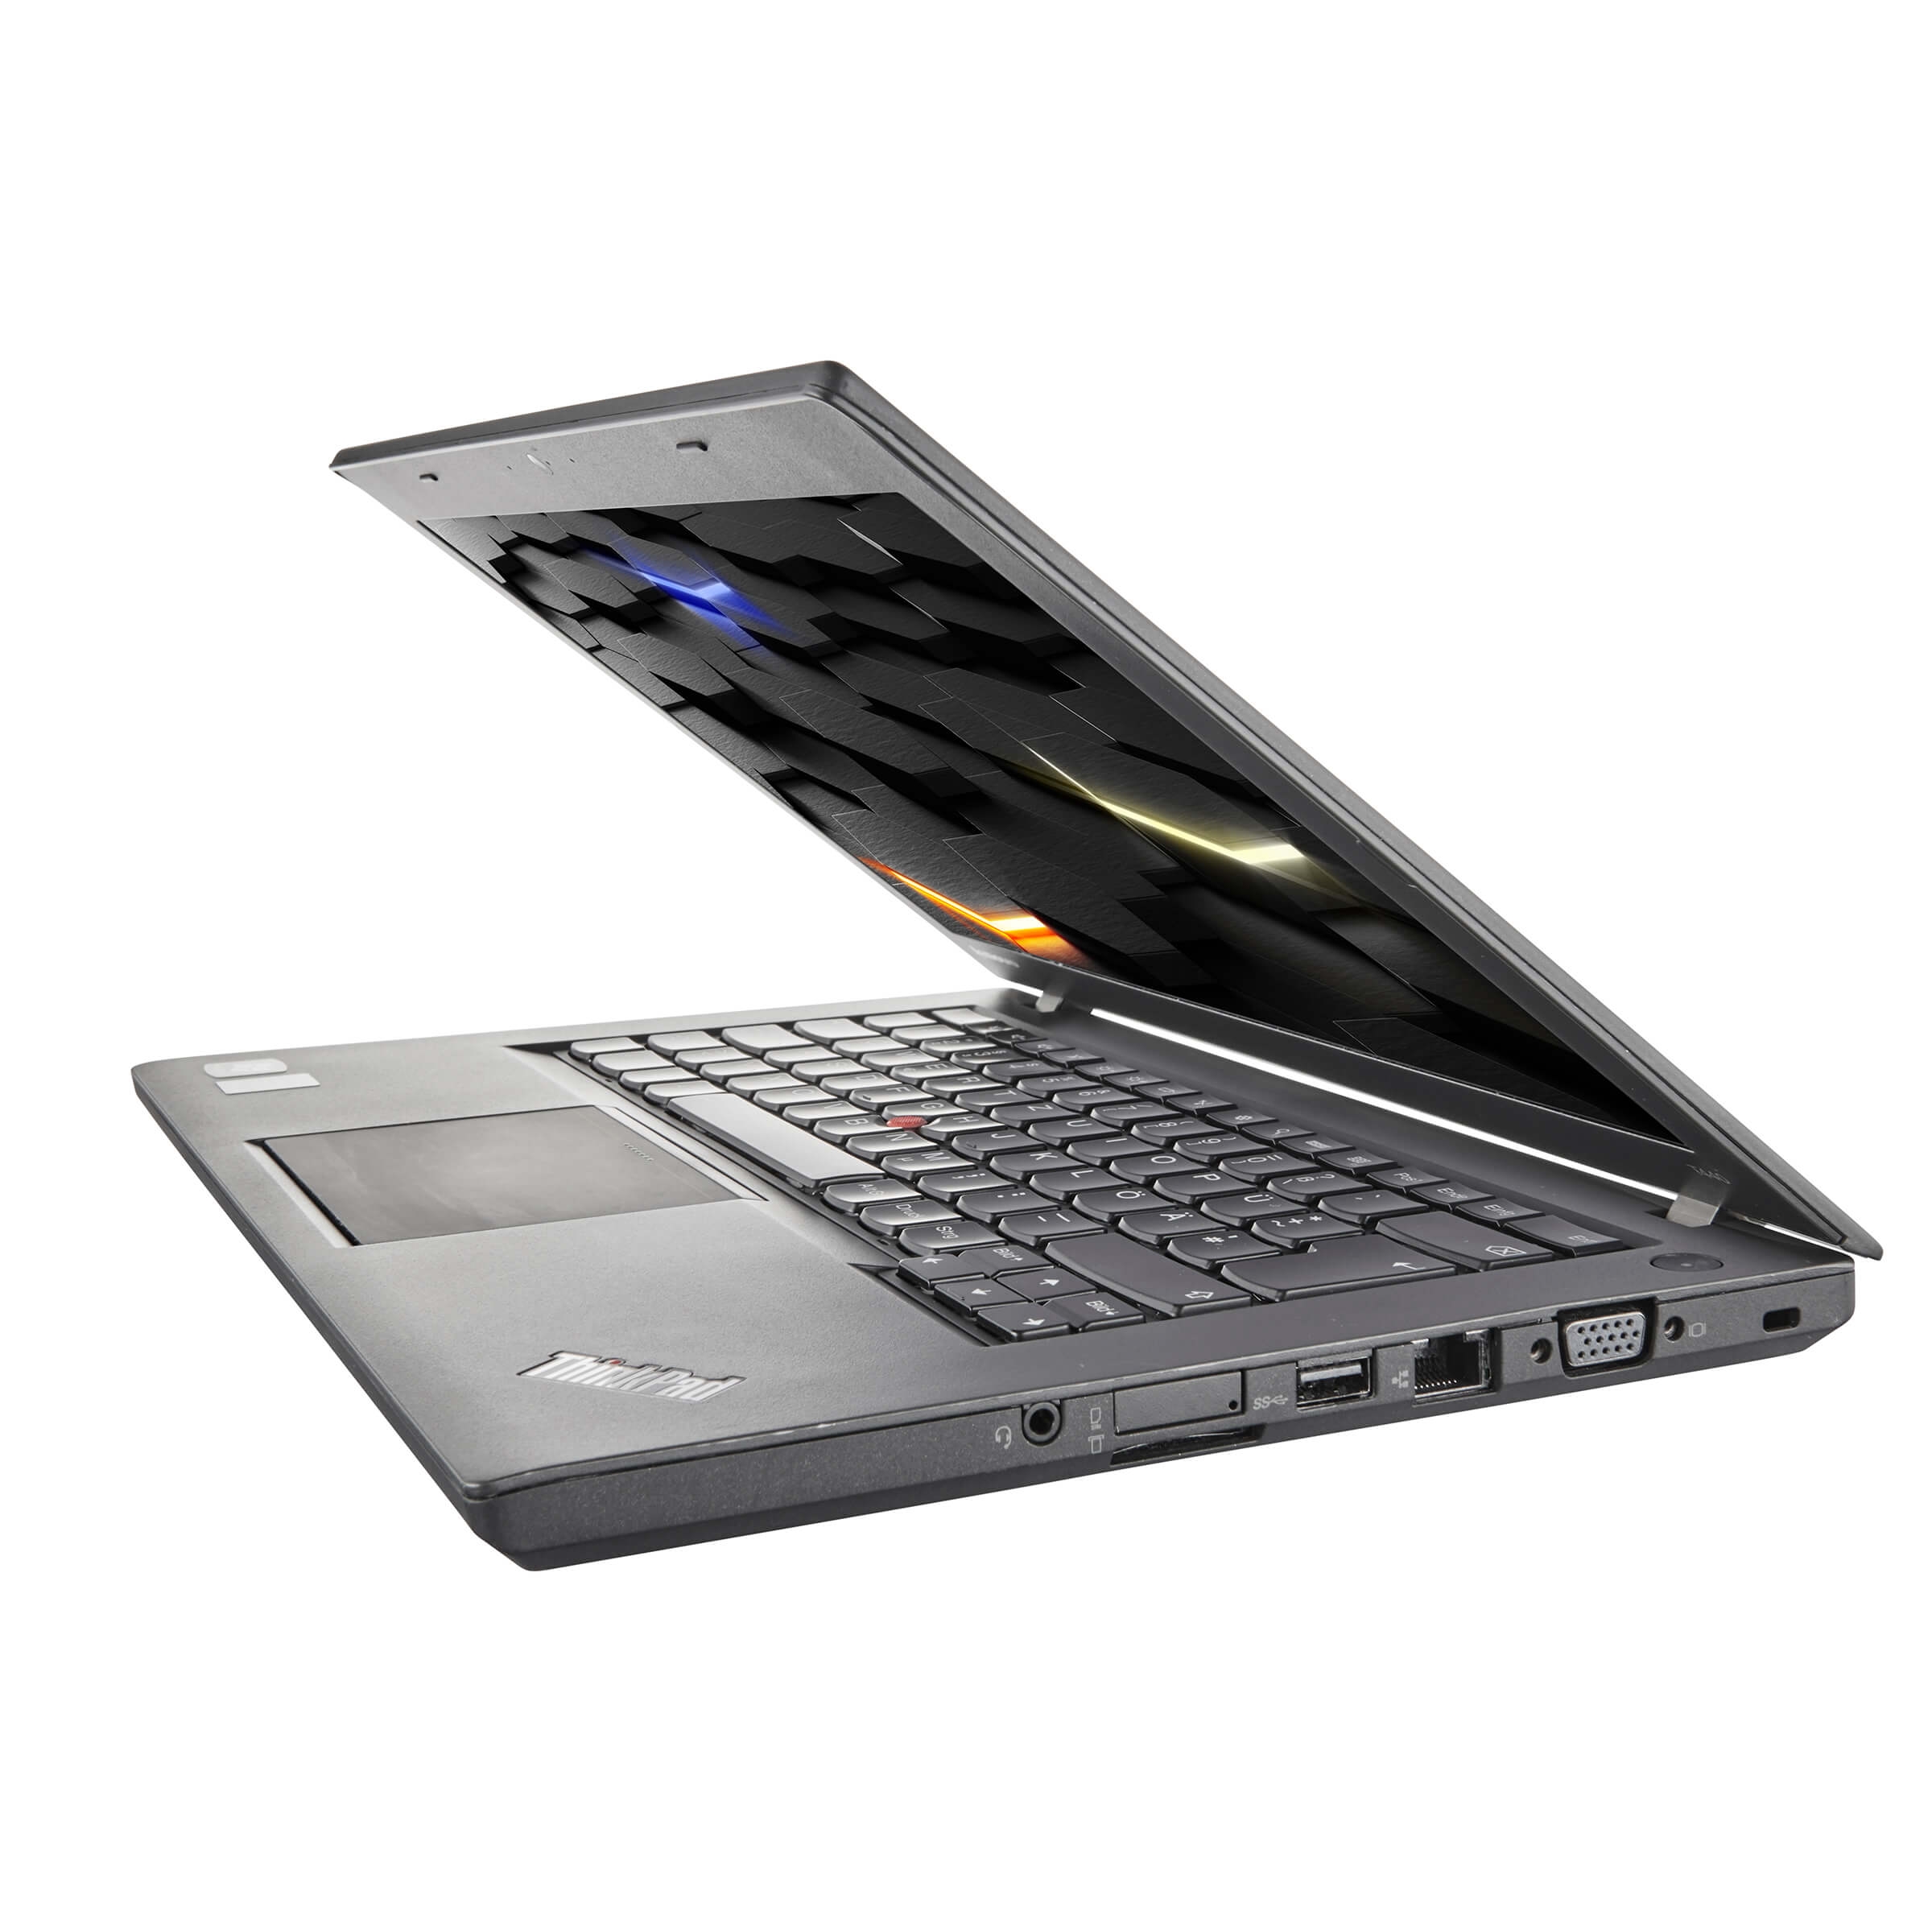 Lenovo ThinkPad T440s, i5, 14 Zoll HD, 4GB, 120GB SSD, Windows 10 Pro | 1x USB Anschluss defekt